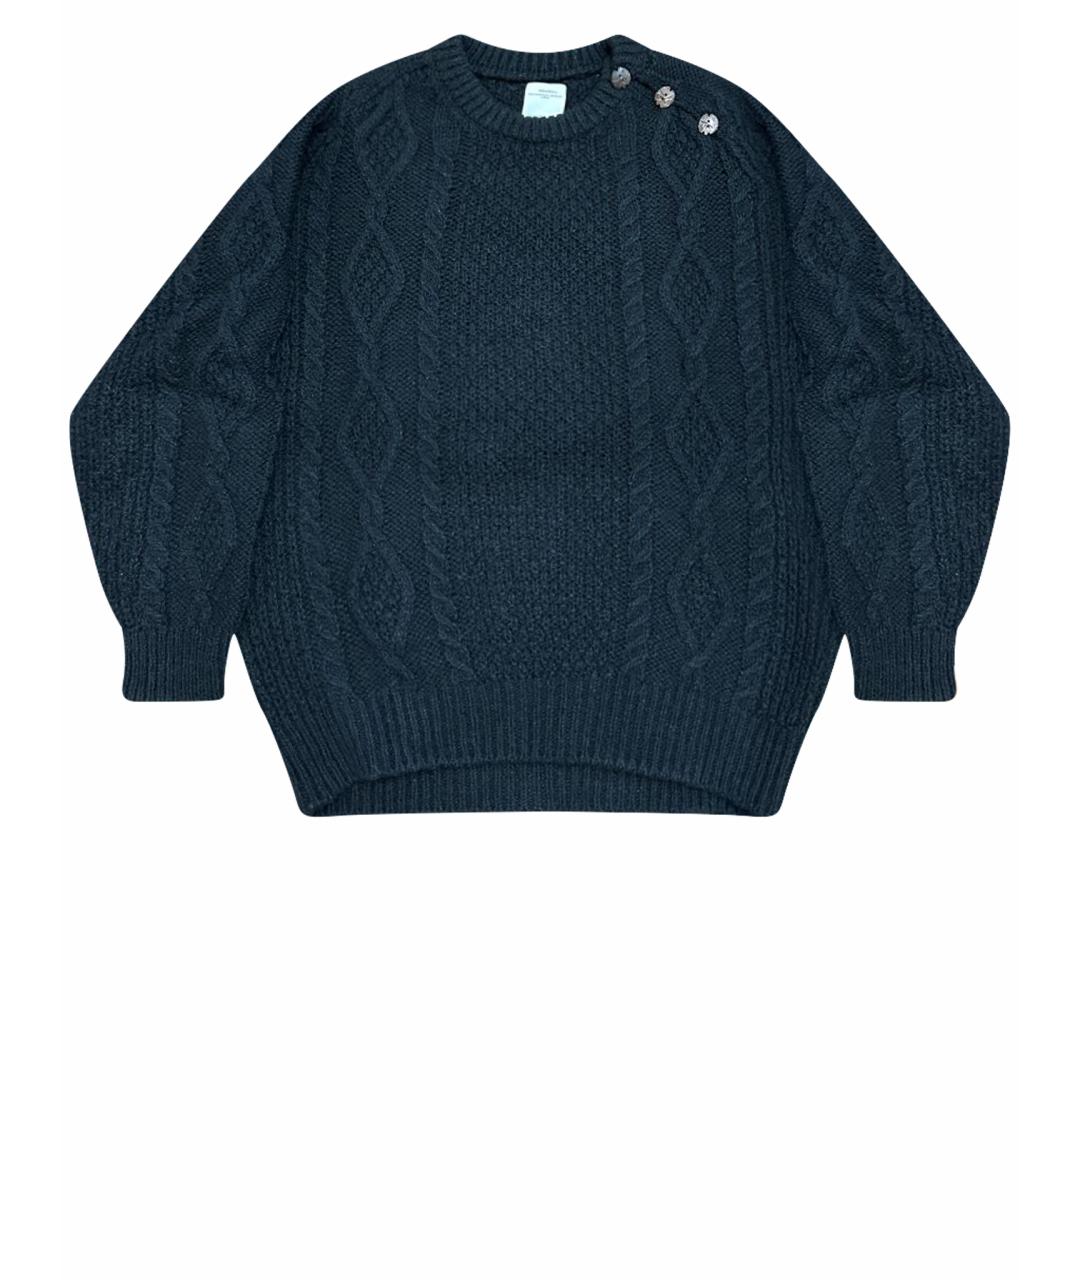 VISVIM Черный шерстяной джемпер / свитер, фото 1